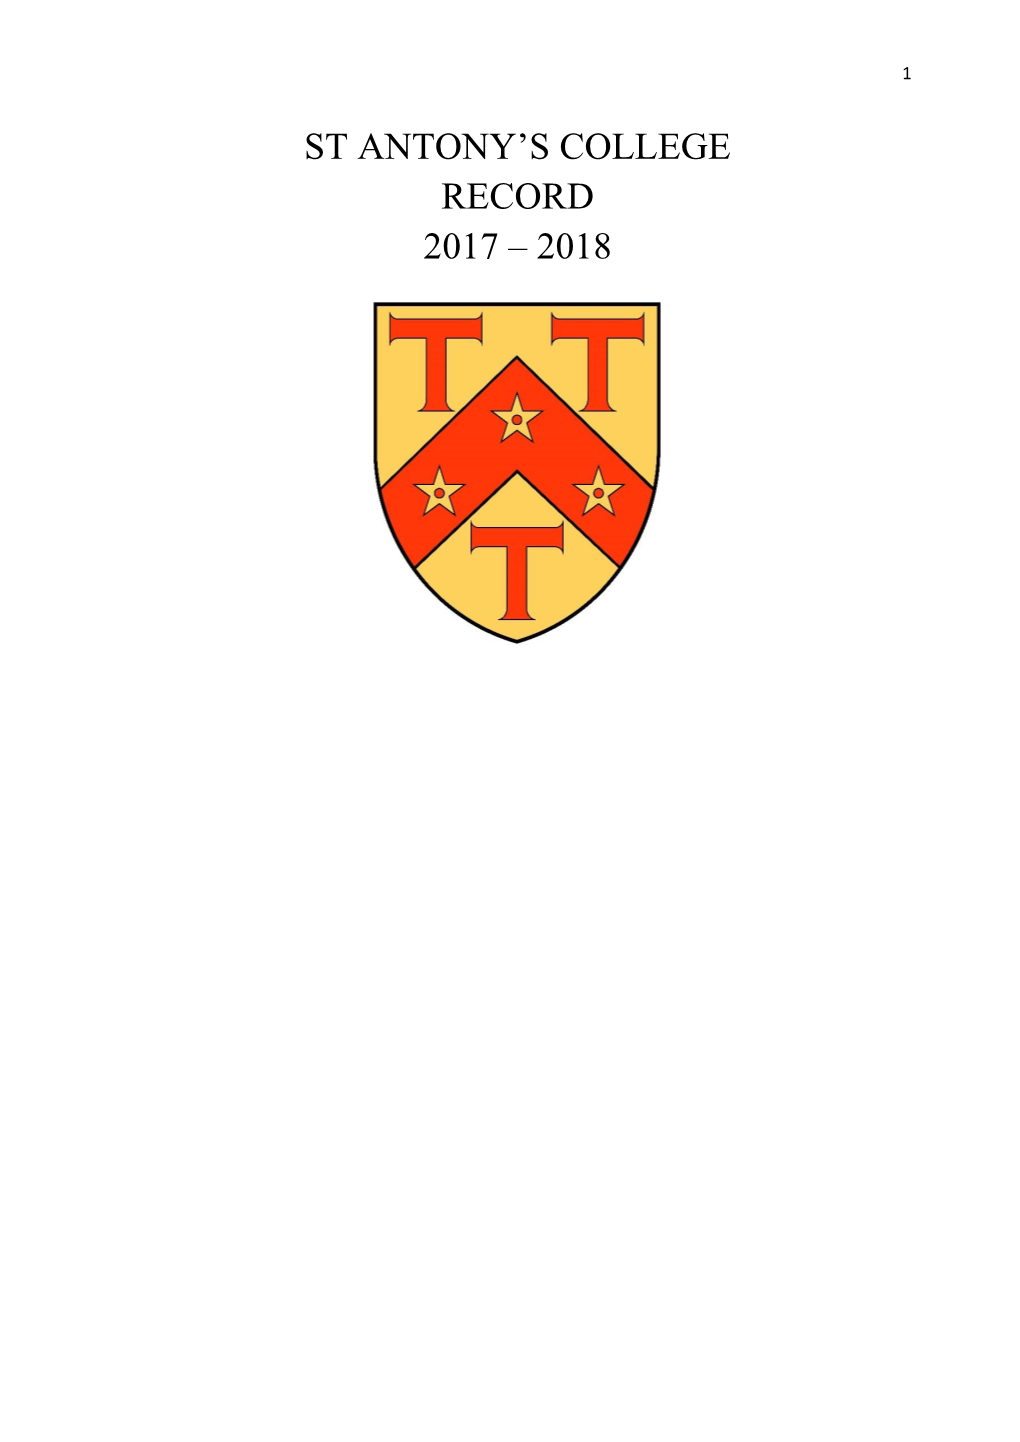 St Antony's College Record 2017 – 2018